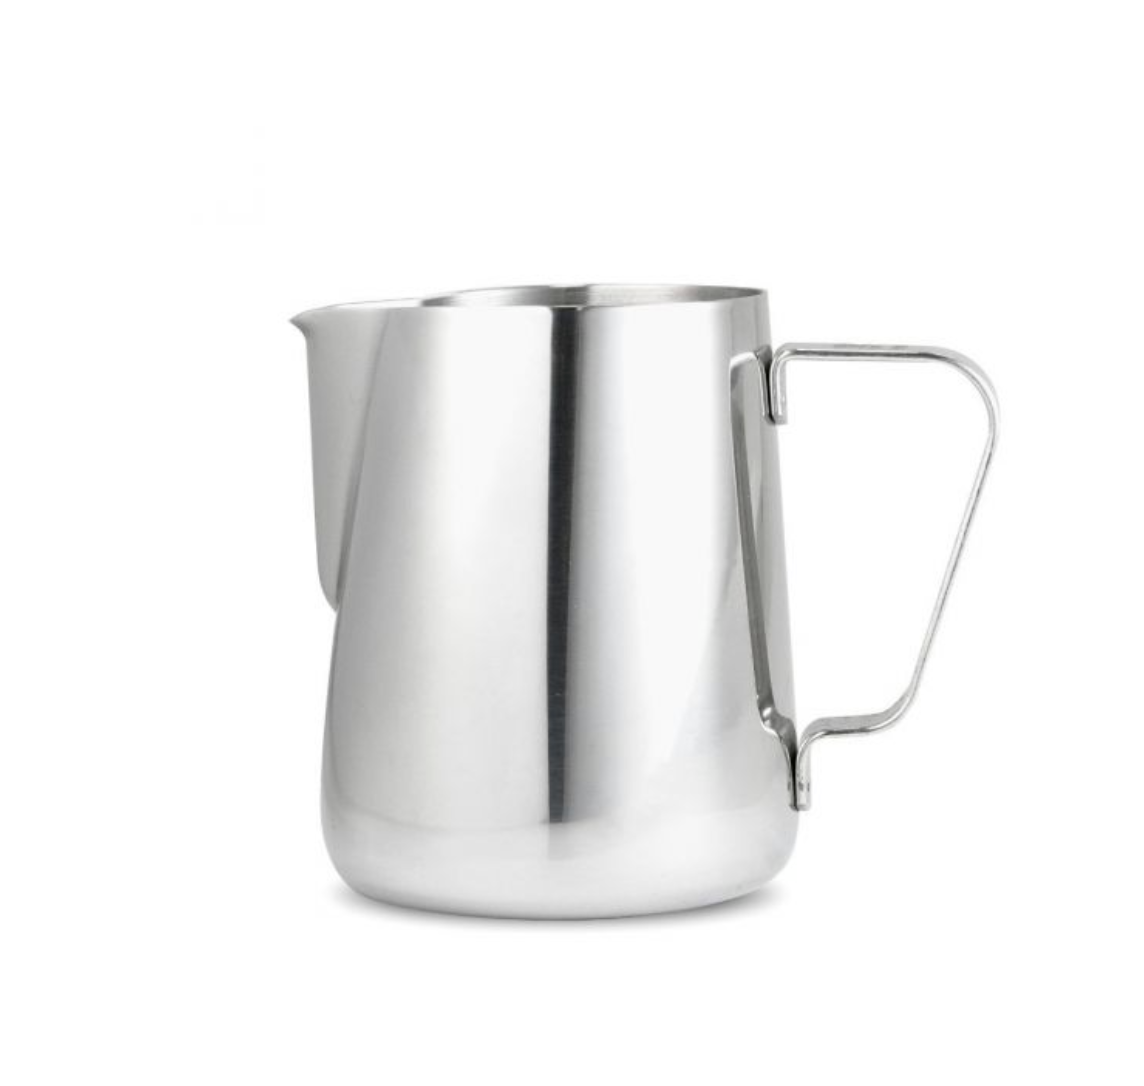 20oz milk pitcher – Store